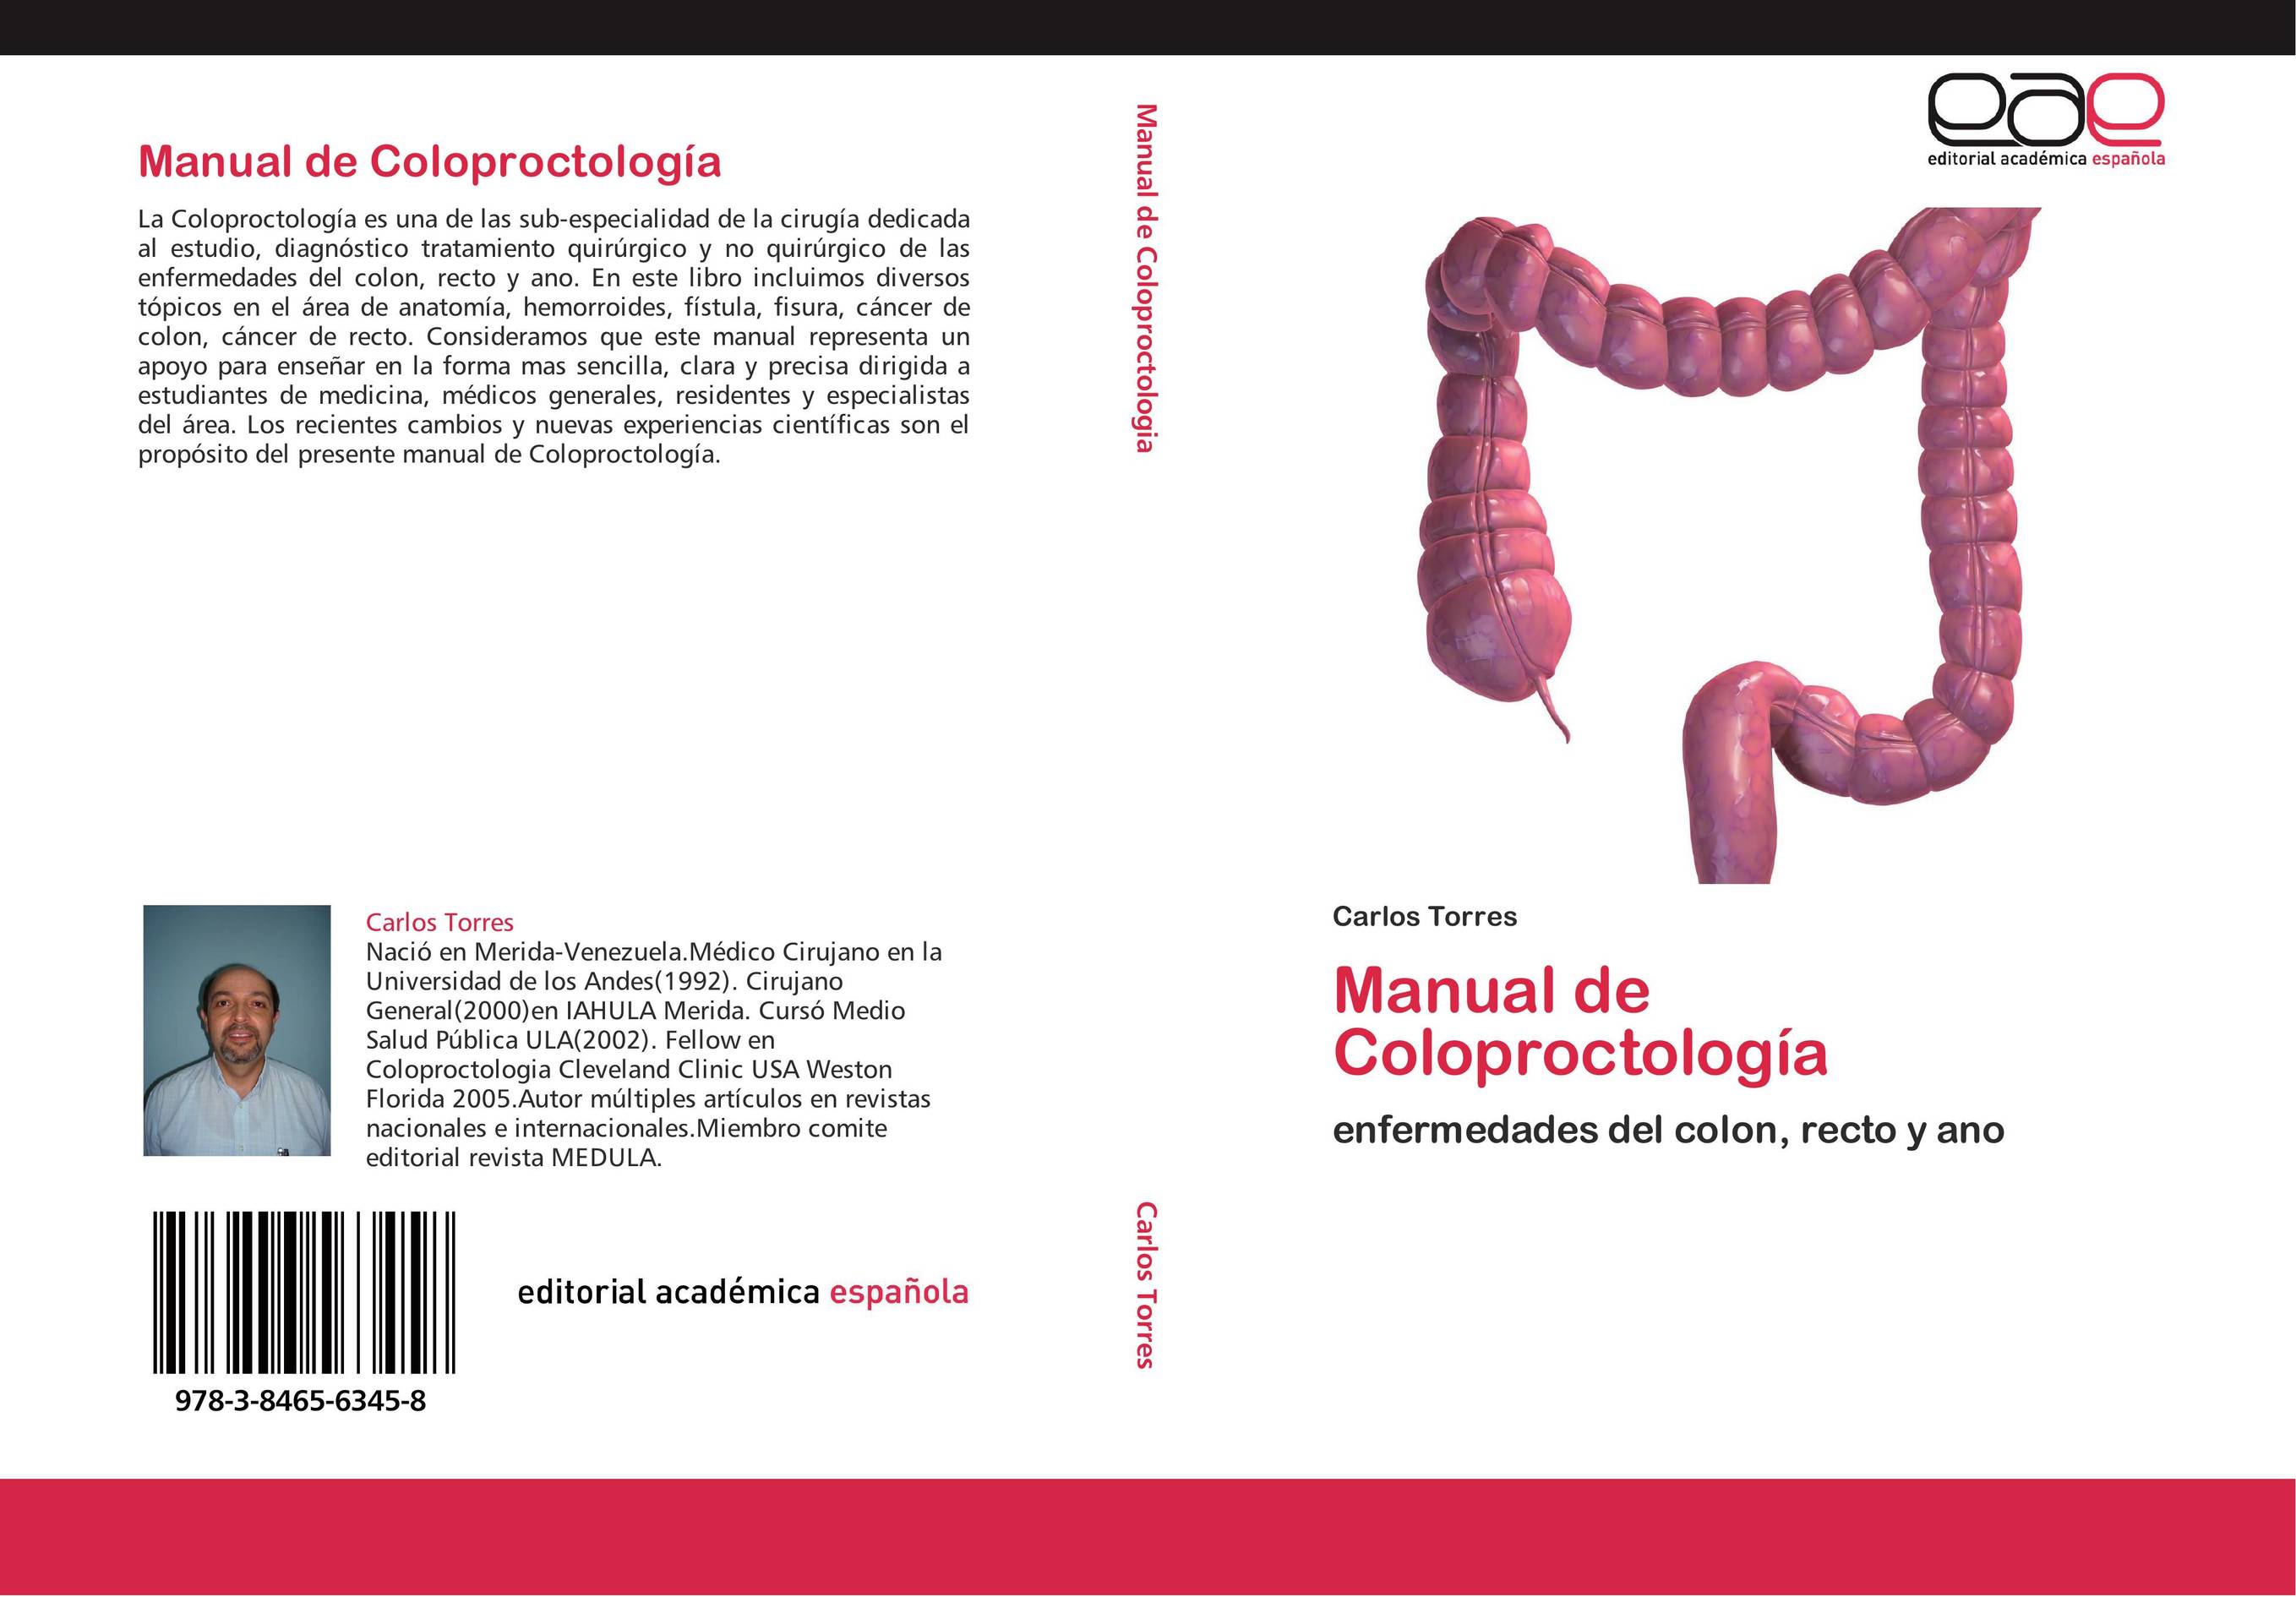 Manual de Coloproctología